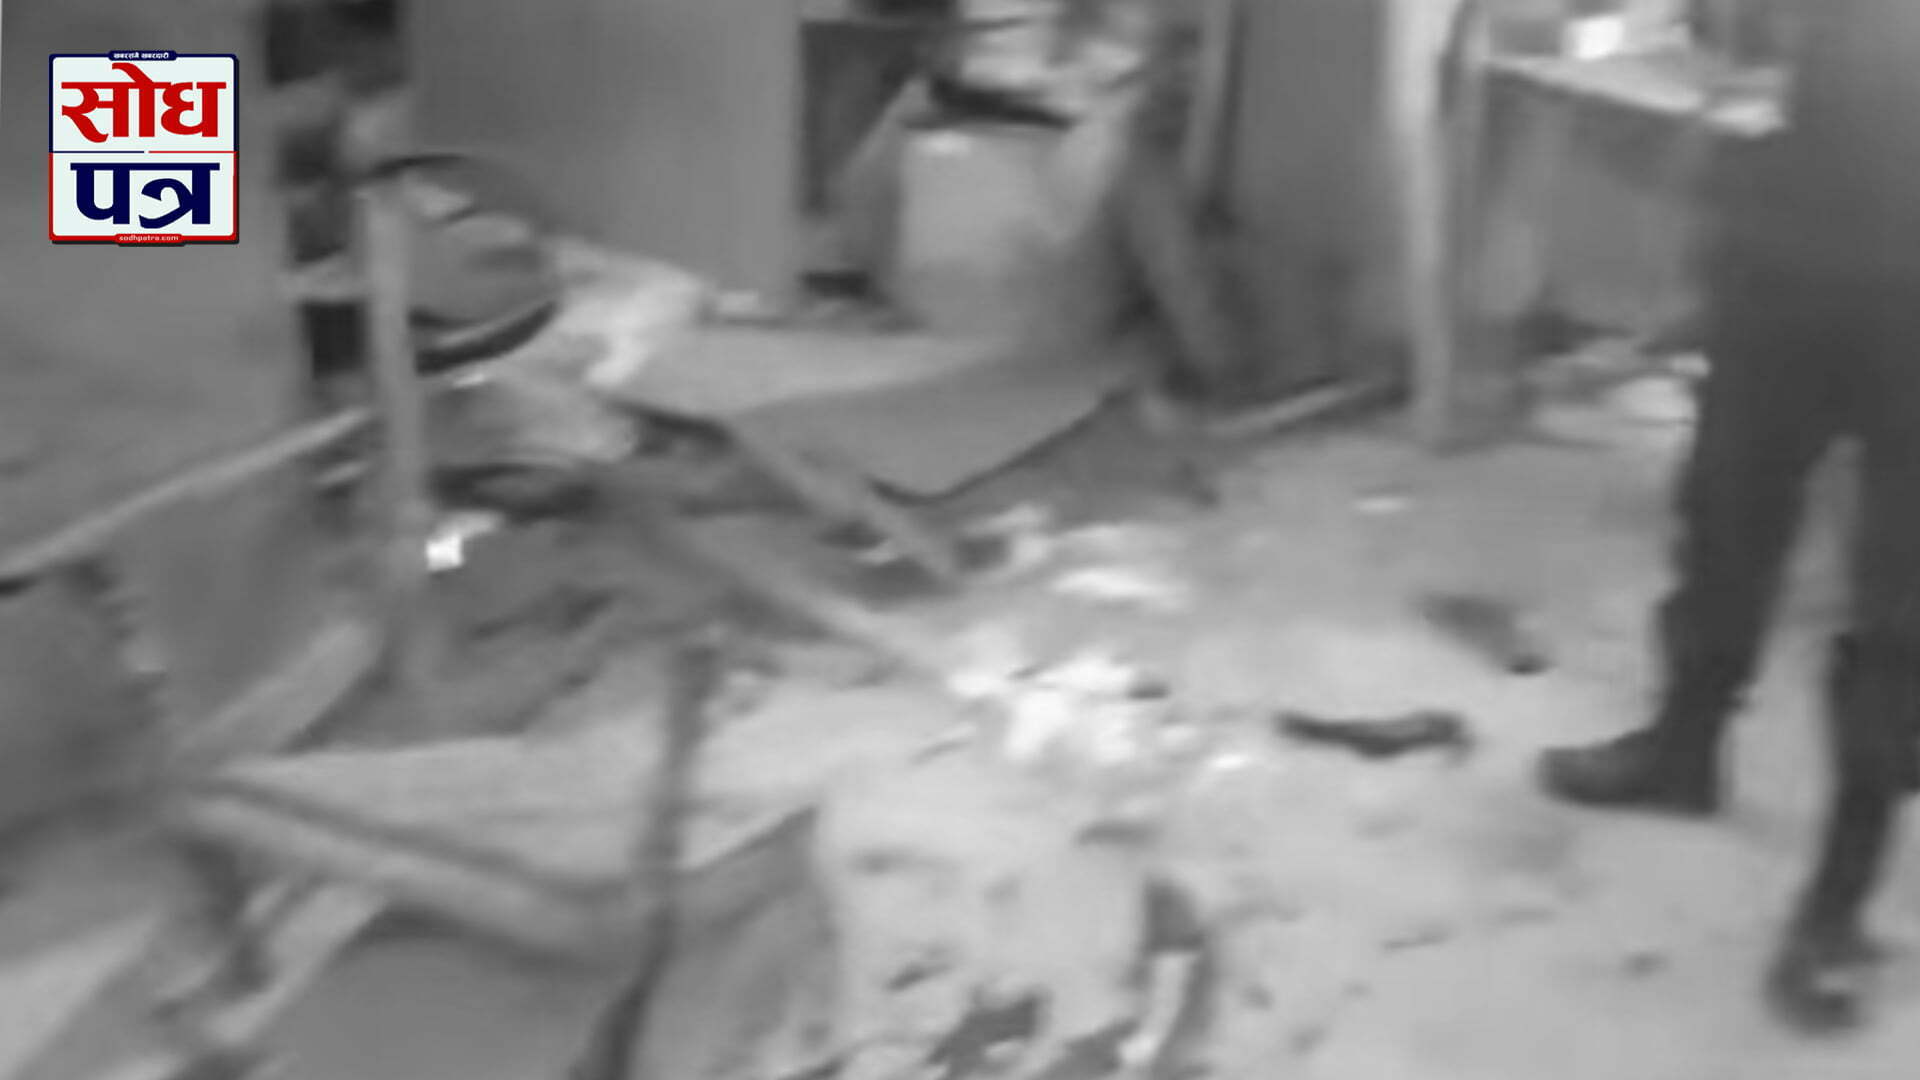 सिरहाको मालपोत कार्यालयमा भएको बम विस्फोटको जिम्मा गोइत समूहले लियो